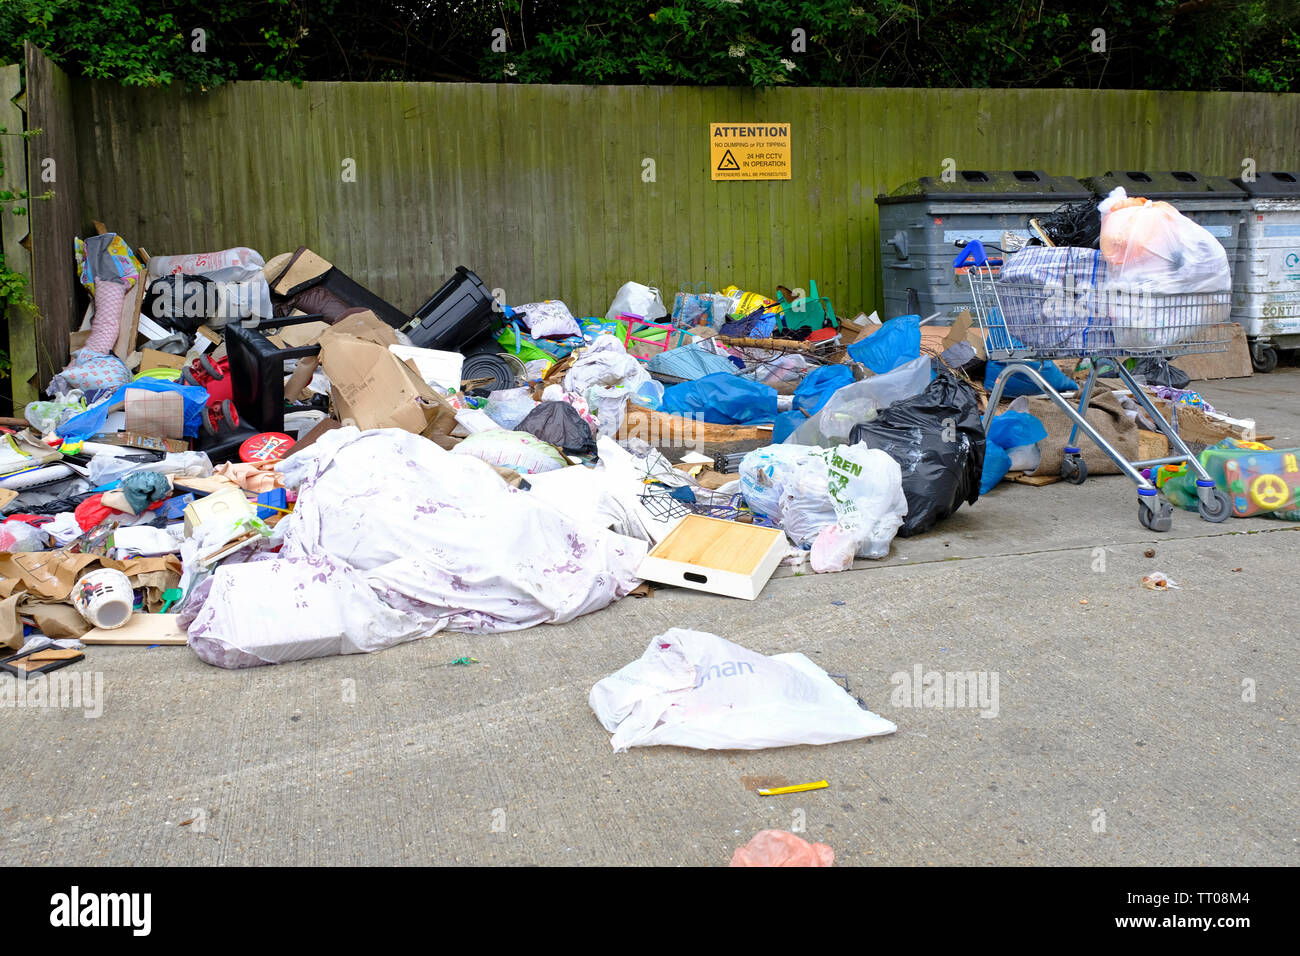 Un gros tas d'ordures à voler à l'entrée de Tesco, Littlehampton, West Sussex. Panneau d'avertissement ignoré CCTV Banque D'Images